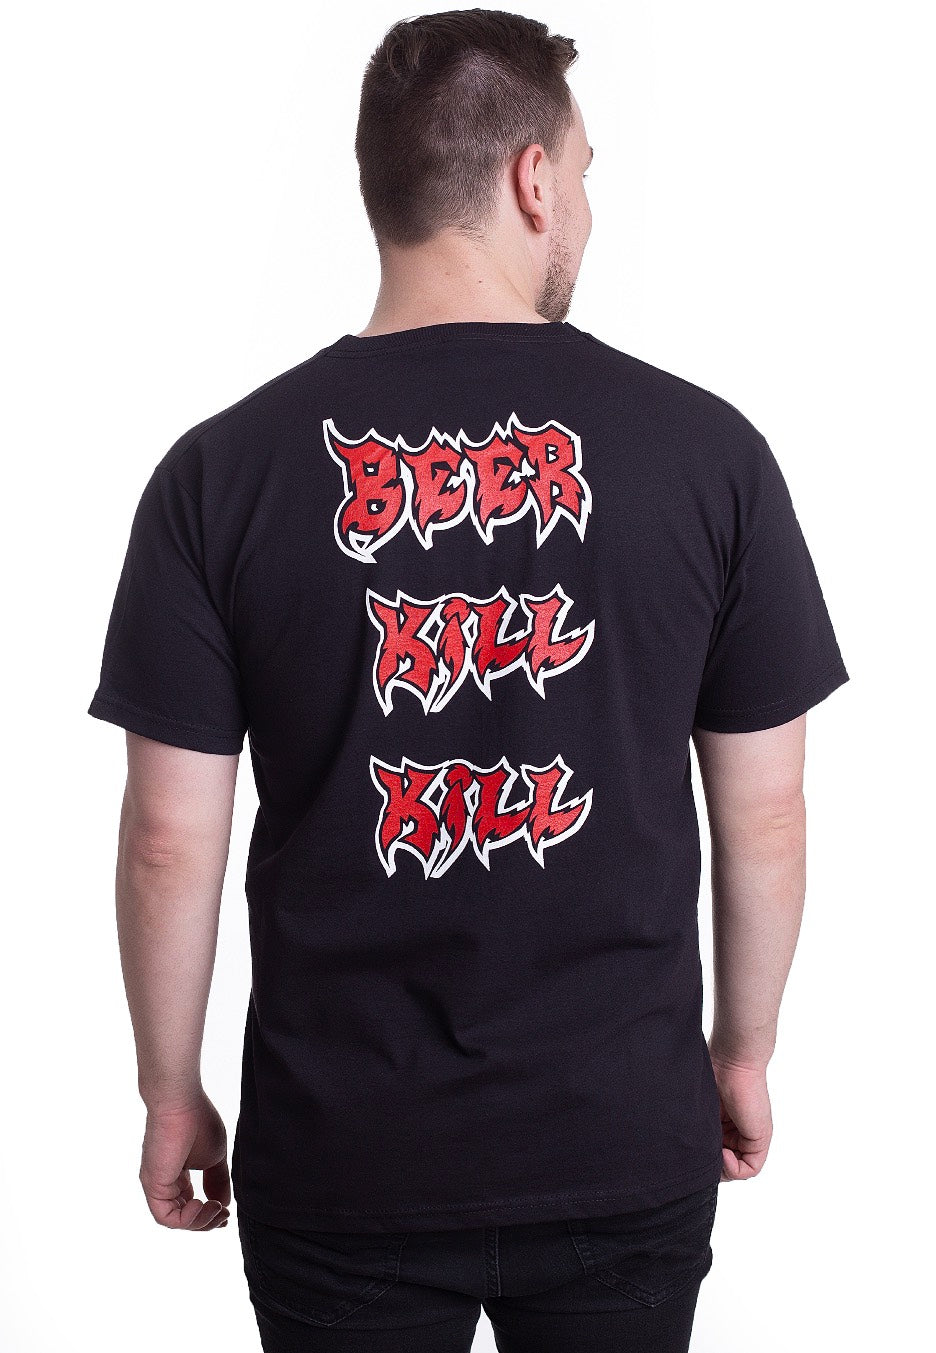 Korpiklaani - Beer Kill Kill - T-Shirt